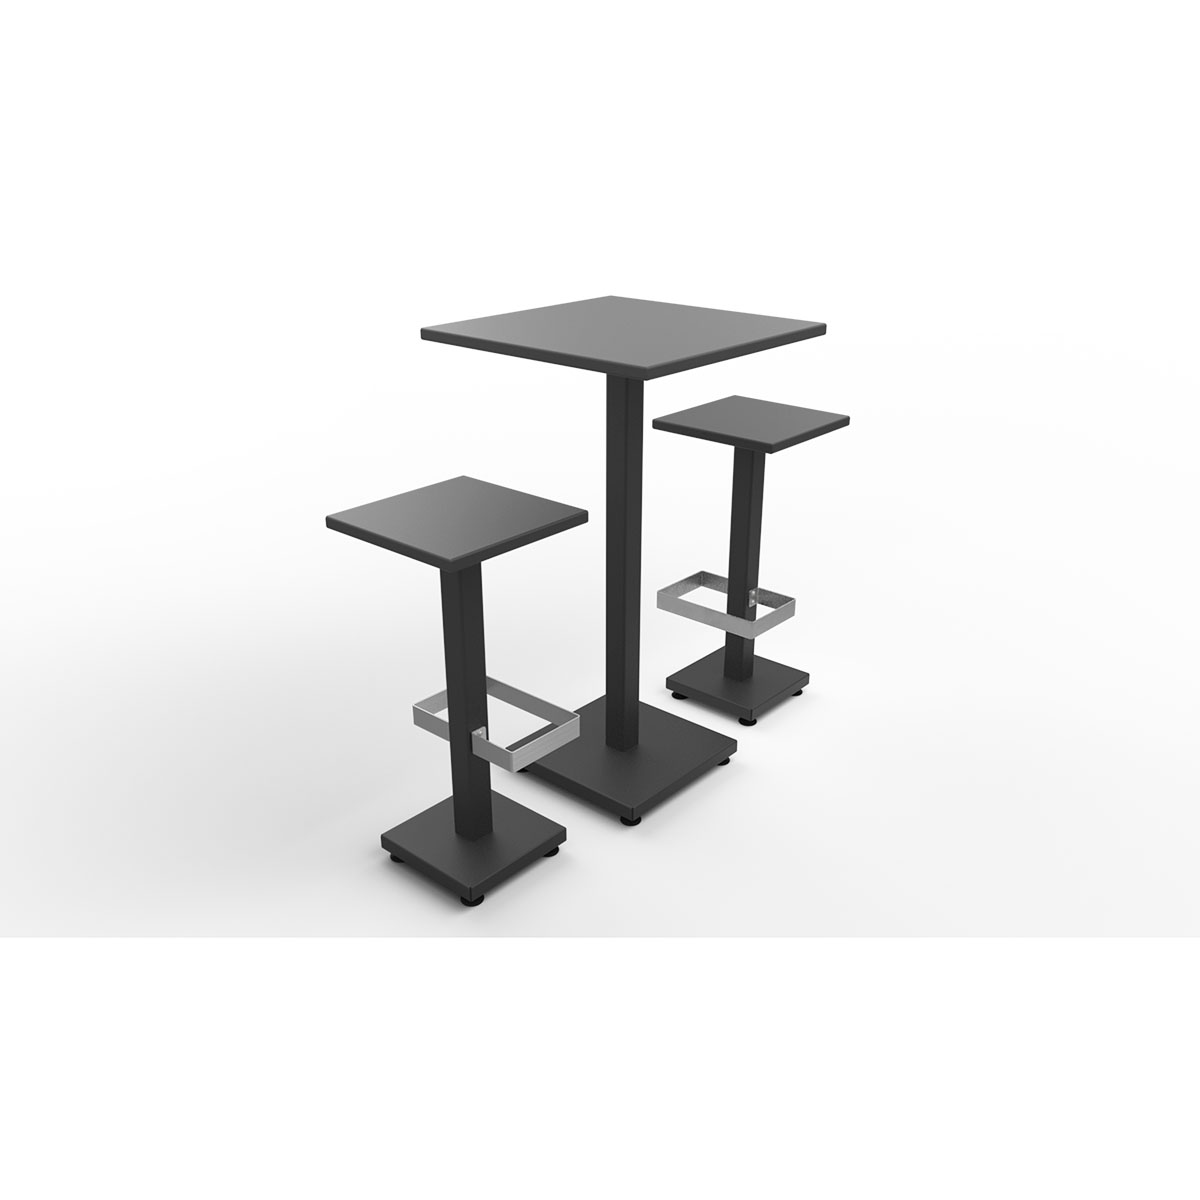 https://www.guyon-mobilier-urbain.com/wp-content/uploads/2022/12/guyon-fabricant-francais-table-mange-debout-Brunch-pied-central-plateau-stratifie-autostable.jpg